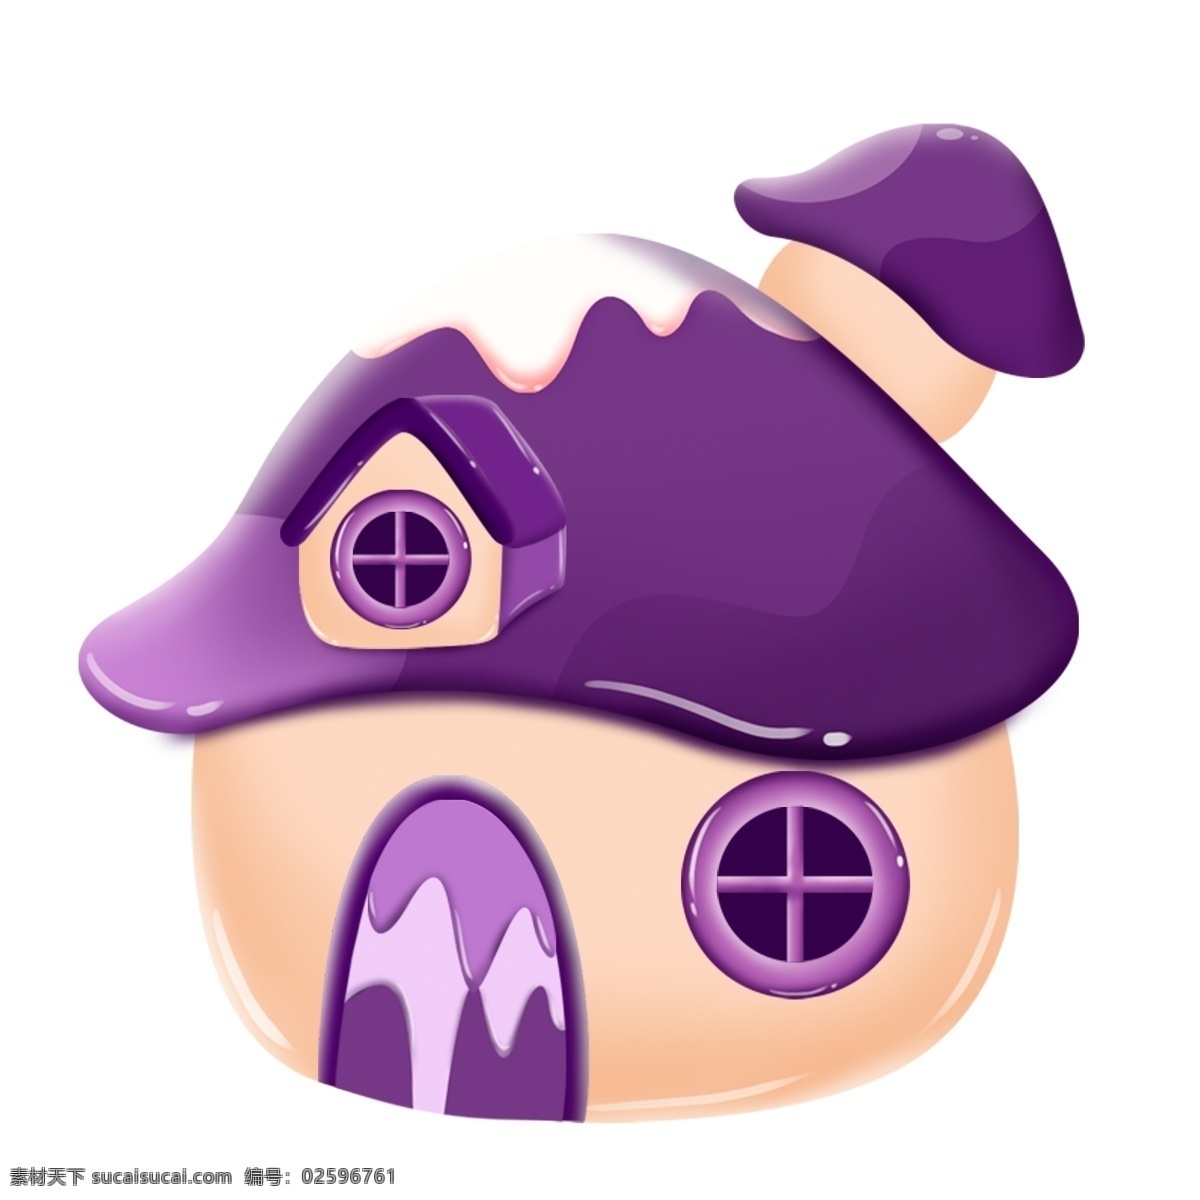 紫色 卡通 装饰 房屋 蘑菇 童话 彩色 水彩 创意 手绘 绘画元素 现代 简约 图案